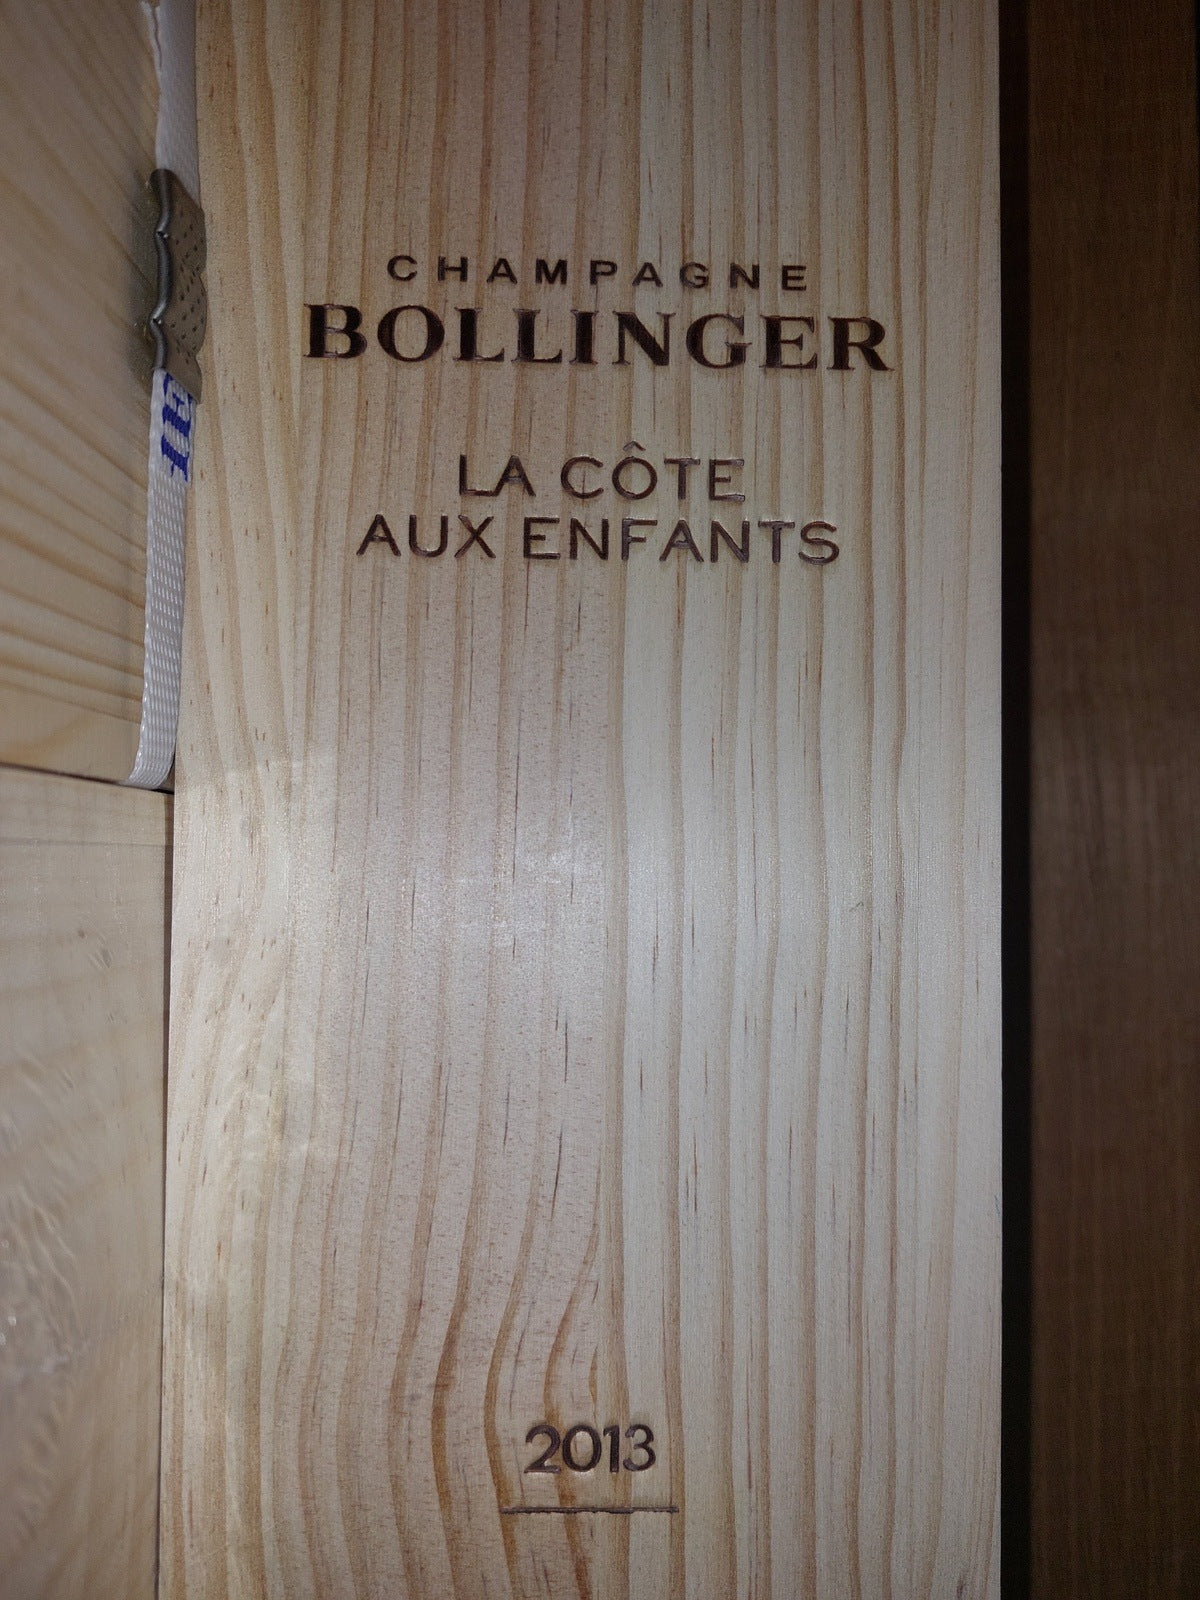 Bollinger: CHAMPAGNER BRUT LA COTE AUX ENFANTS '13 , 0,75L. OHK